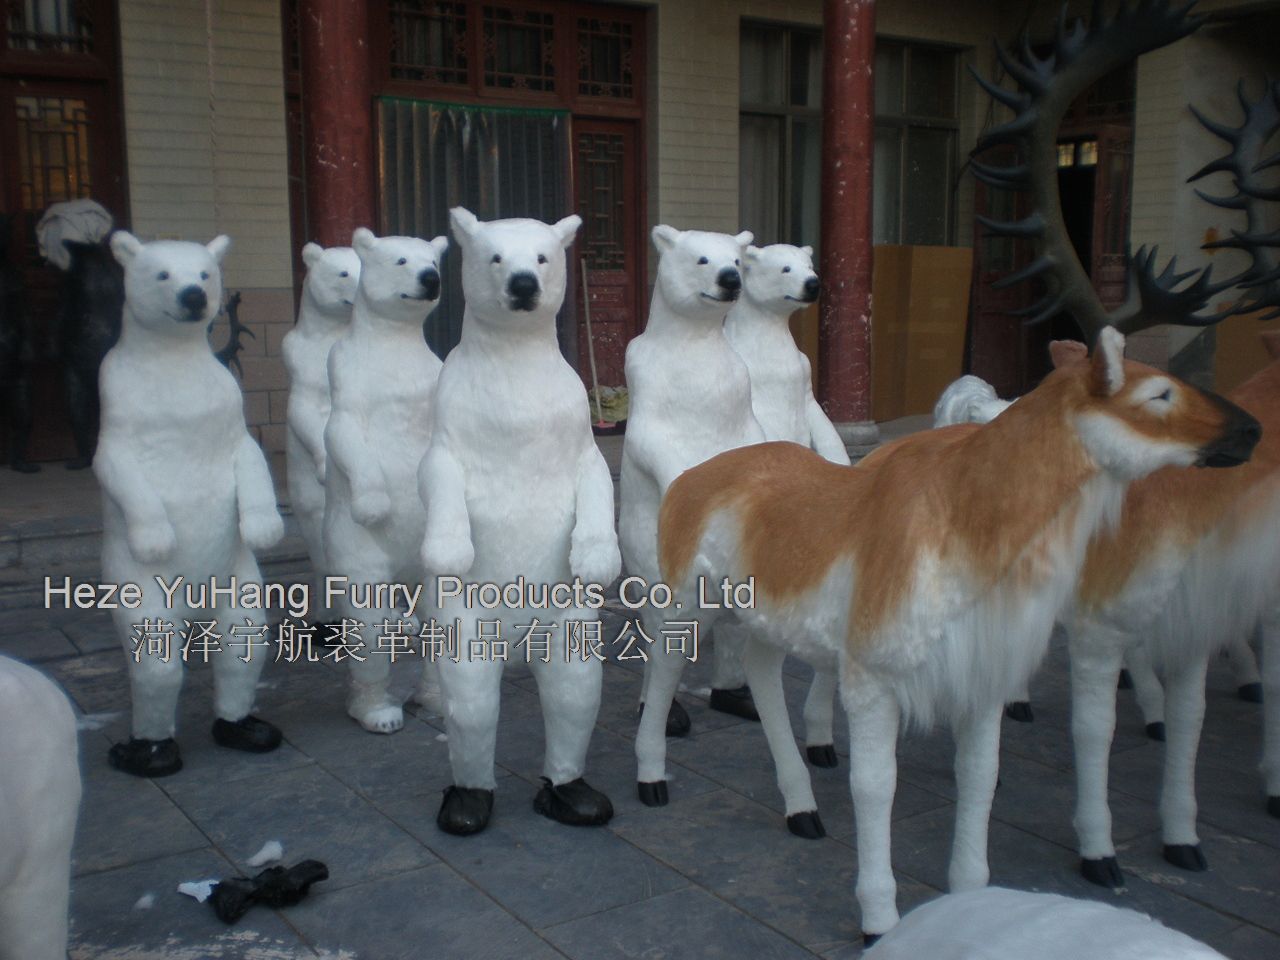 FBR5,菏泽宇航裘革制品有限公司专业仿真皮毛动物生产厂家